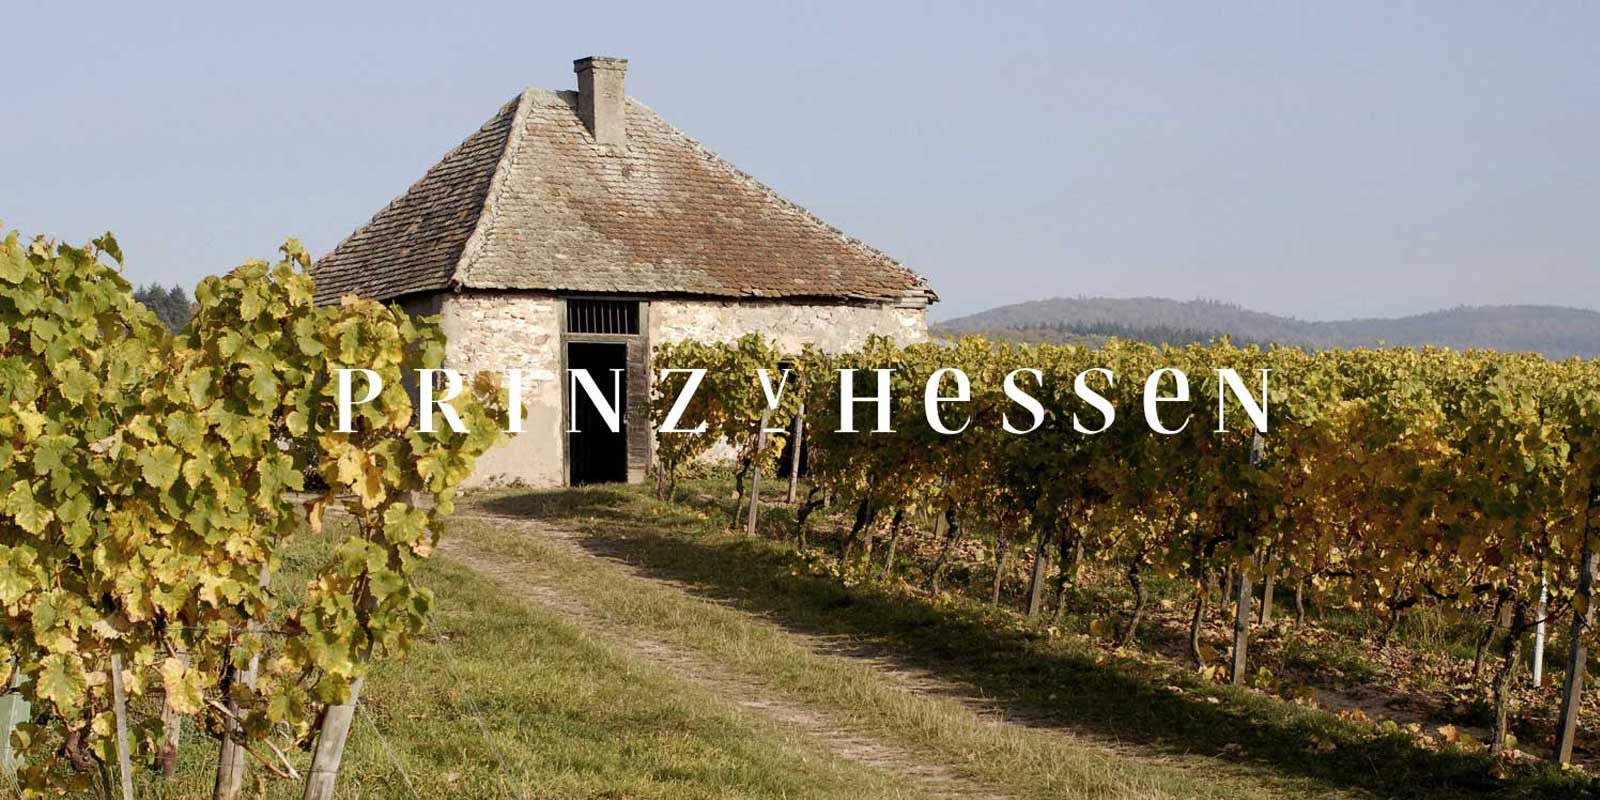 Vinogradnistvo Prince of Hesse - vinska regija Rheingau Klet PRINZ VON HESSEN v Johannisbergu v Rheingauu je eden od izjemnih proizvajalcev rizlinga v Nemciji in je ustanovni clan VDP regionalnega zdruzenja Rheingau. Stevilna priznanja doma in v tujini odrazajo klet PRINZ VON HESSEN, ki je na vrhunskem nivoju. Vina in penine kleti PRINZ VON HESSEN so prejela stevilne nagrade in visoka mednarodna priznanja.